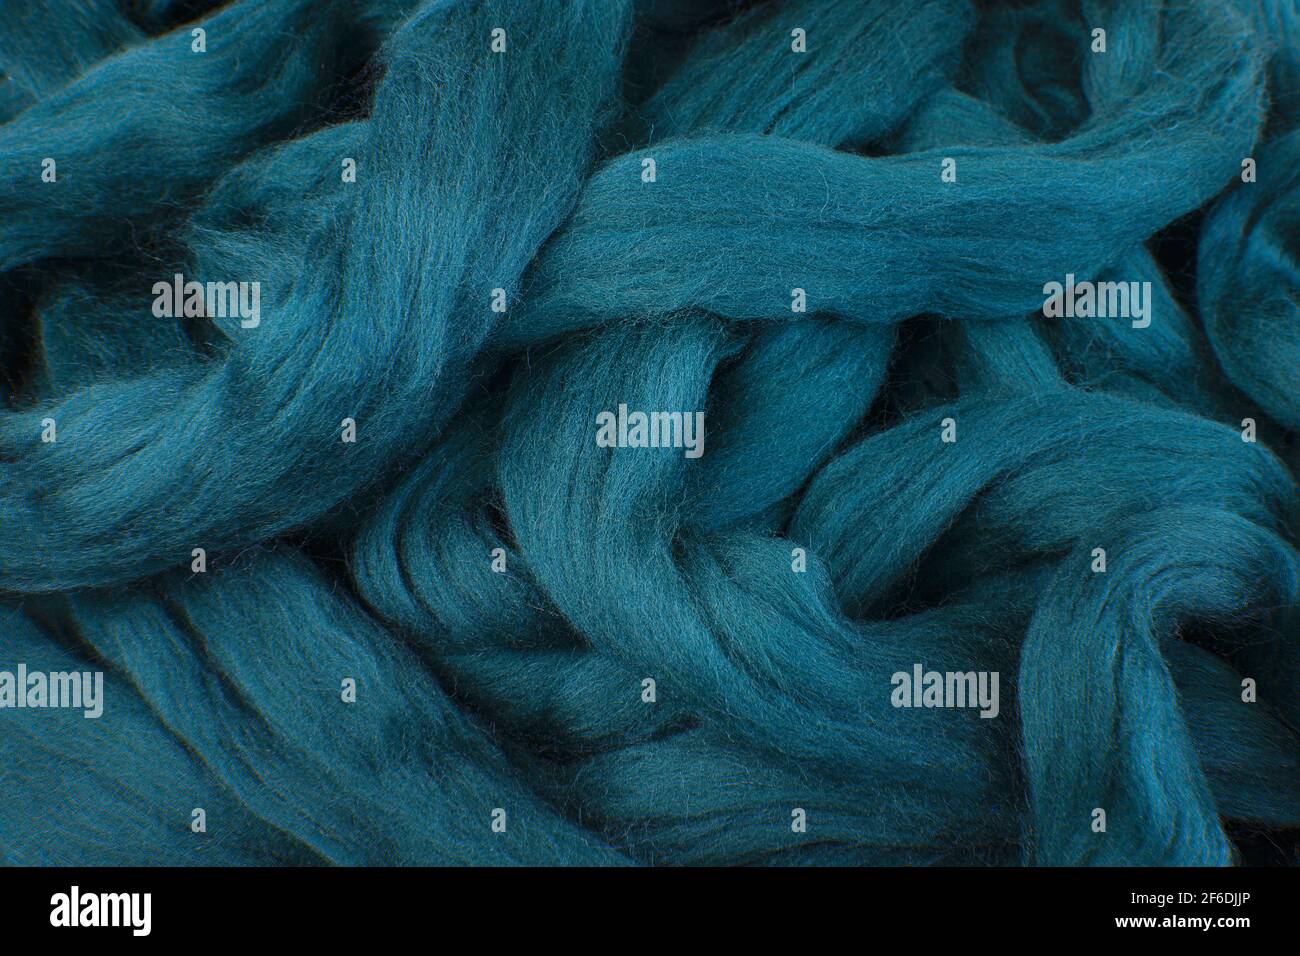 Bella lana merino blu teal sdraiato in sciolto stings pronto da utilizzare Foto Stock